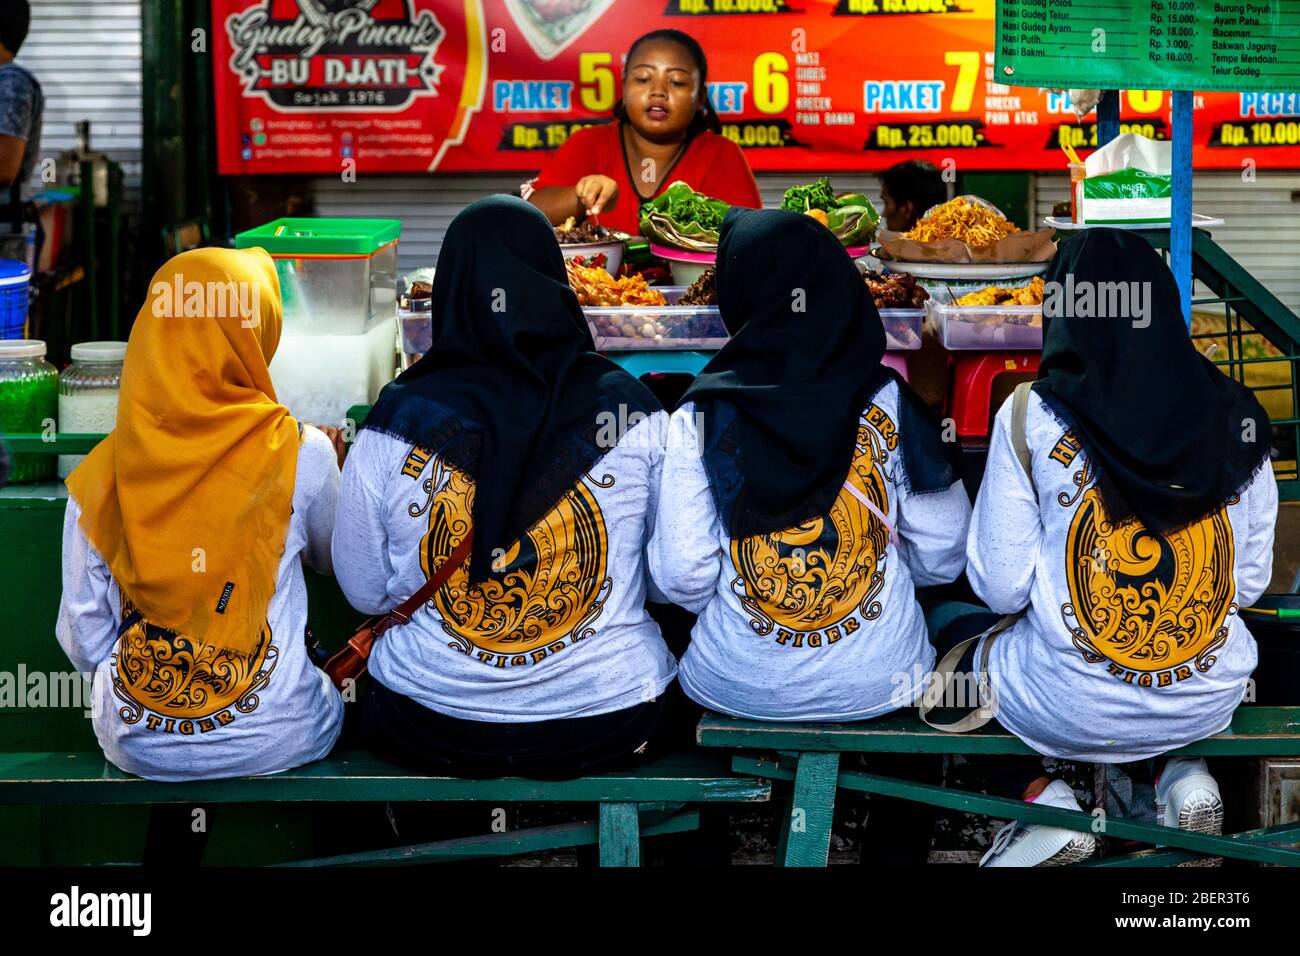 Jeunes femmes indonésiennes manger de la nourriture à UN Street Food Stall, Malioboro Street, Yogyakarta, Indonésie. Banque D'Images